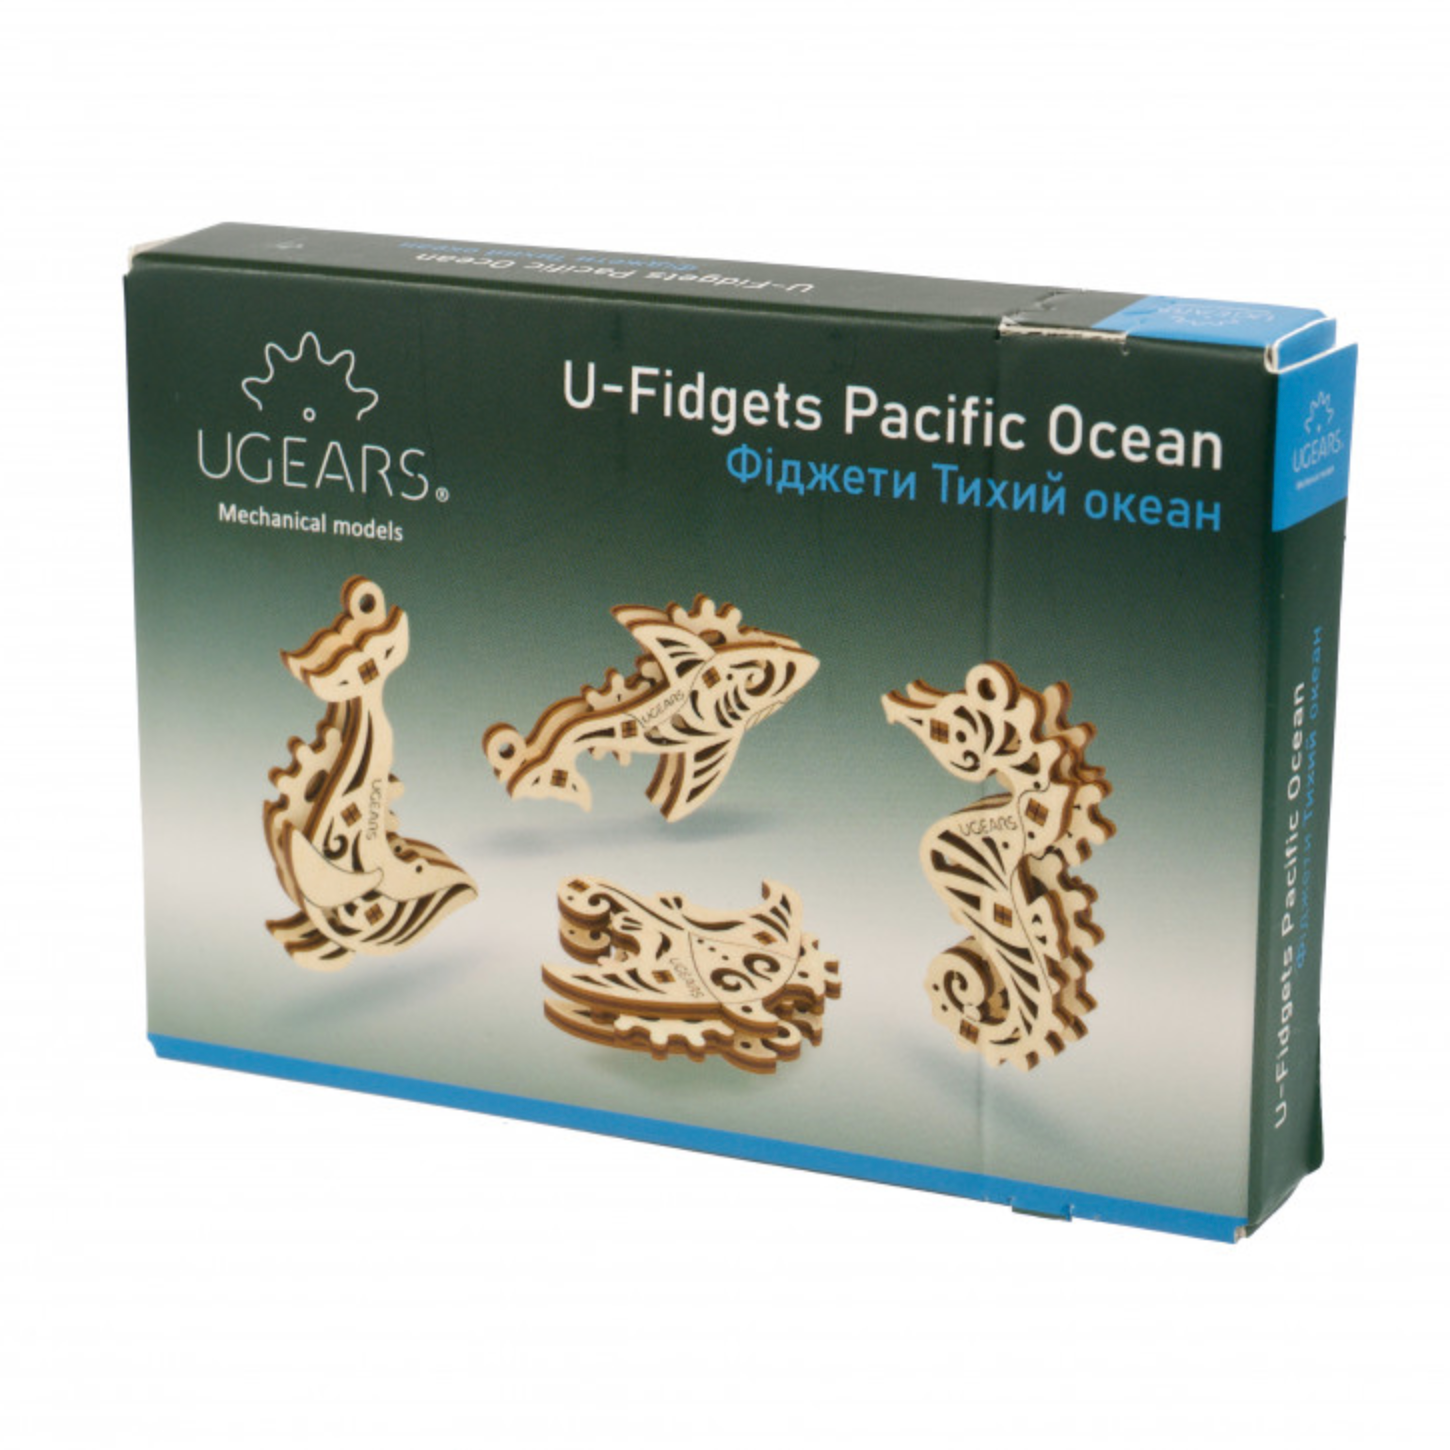 UGears U-Fidget Pacific Ocean